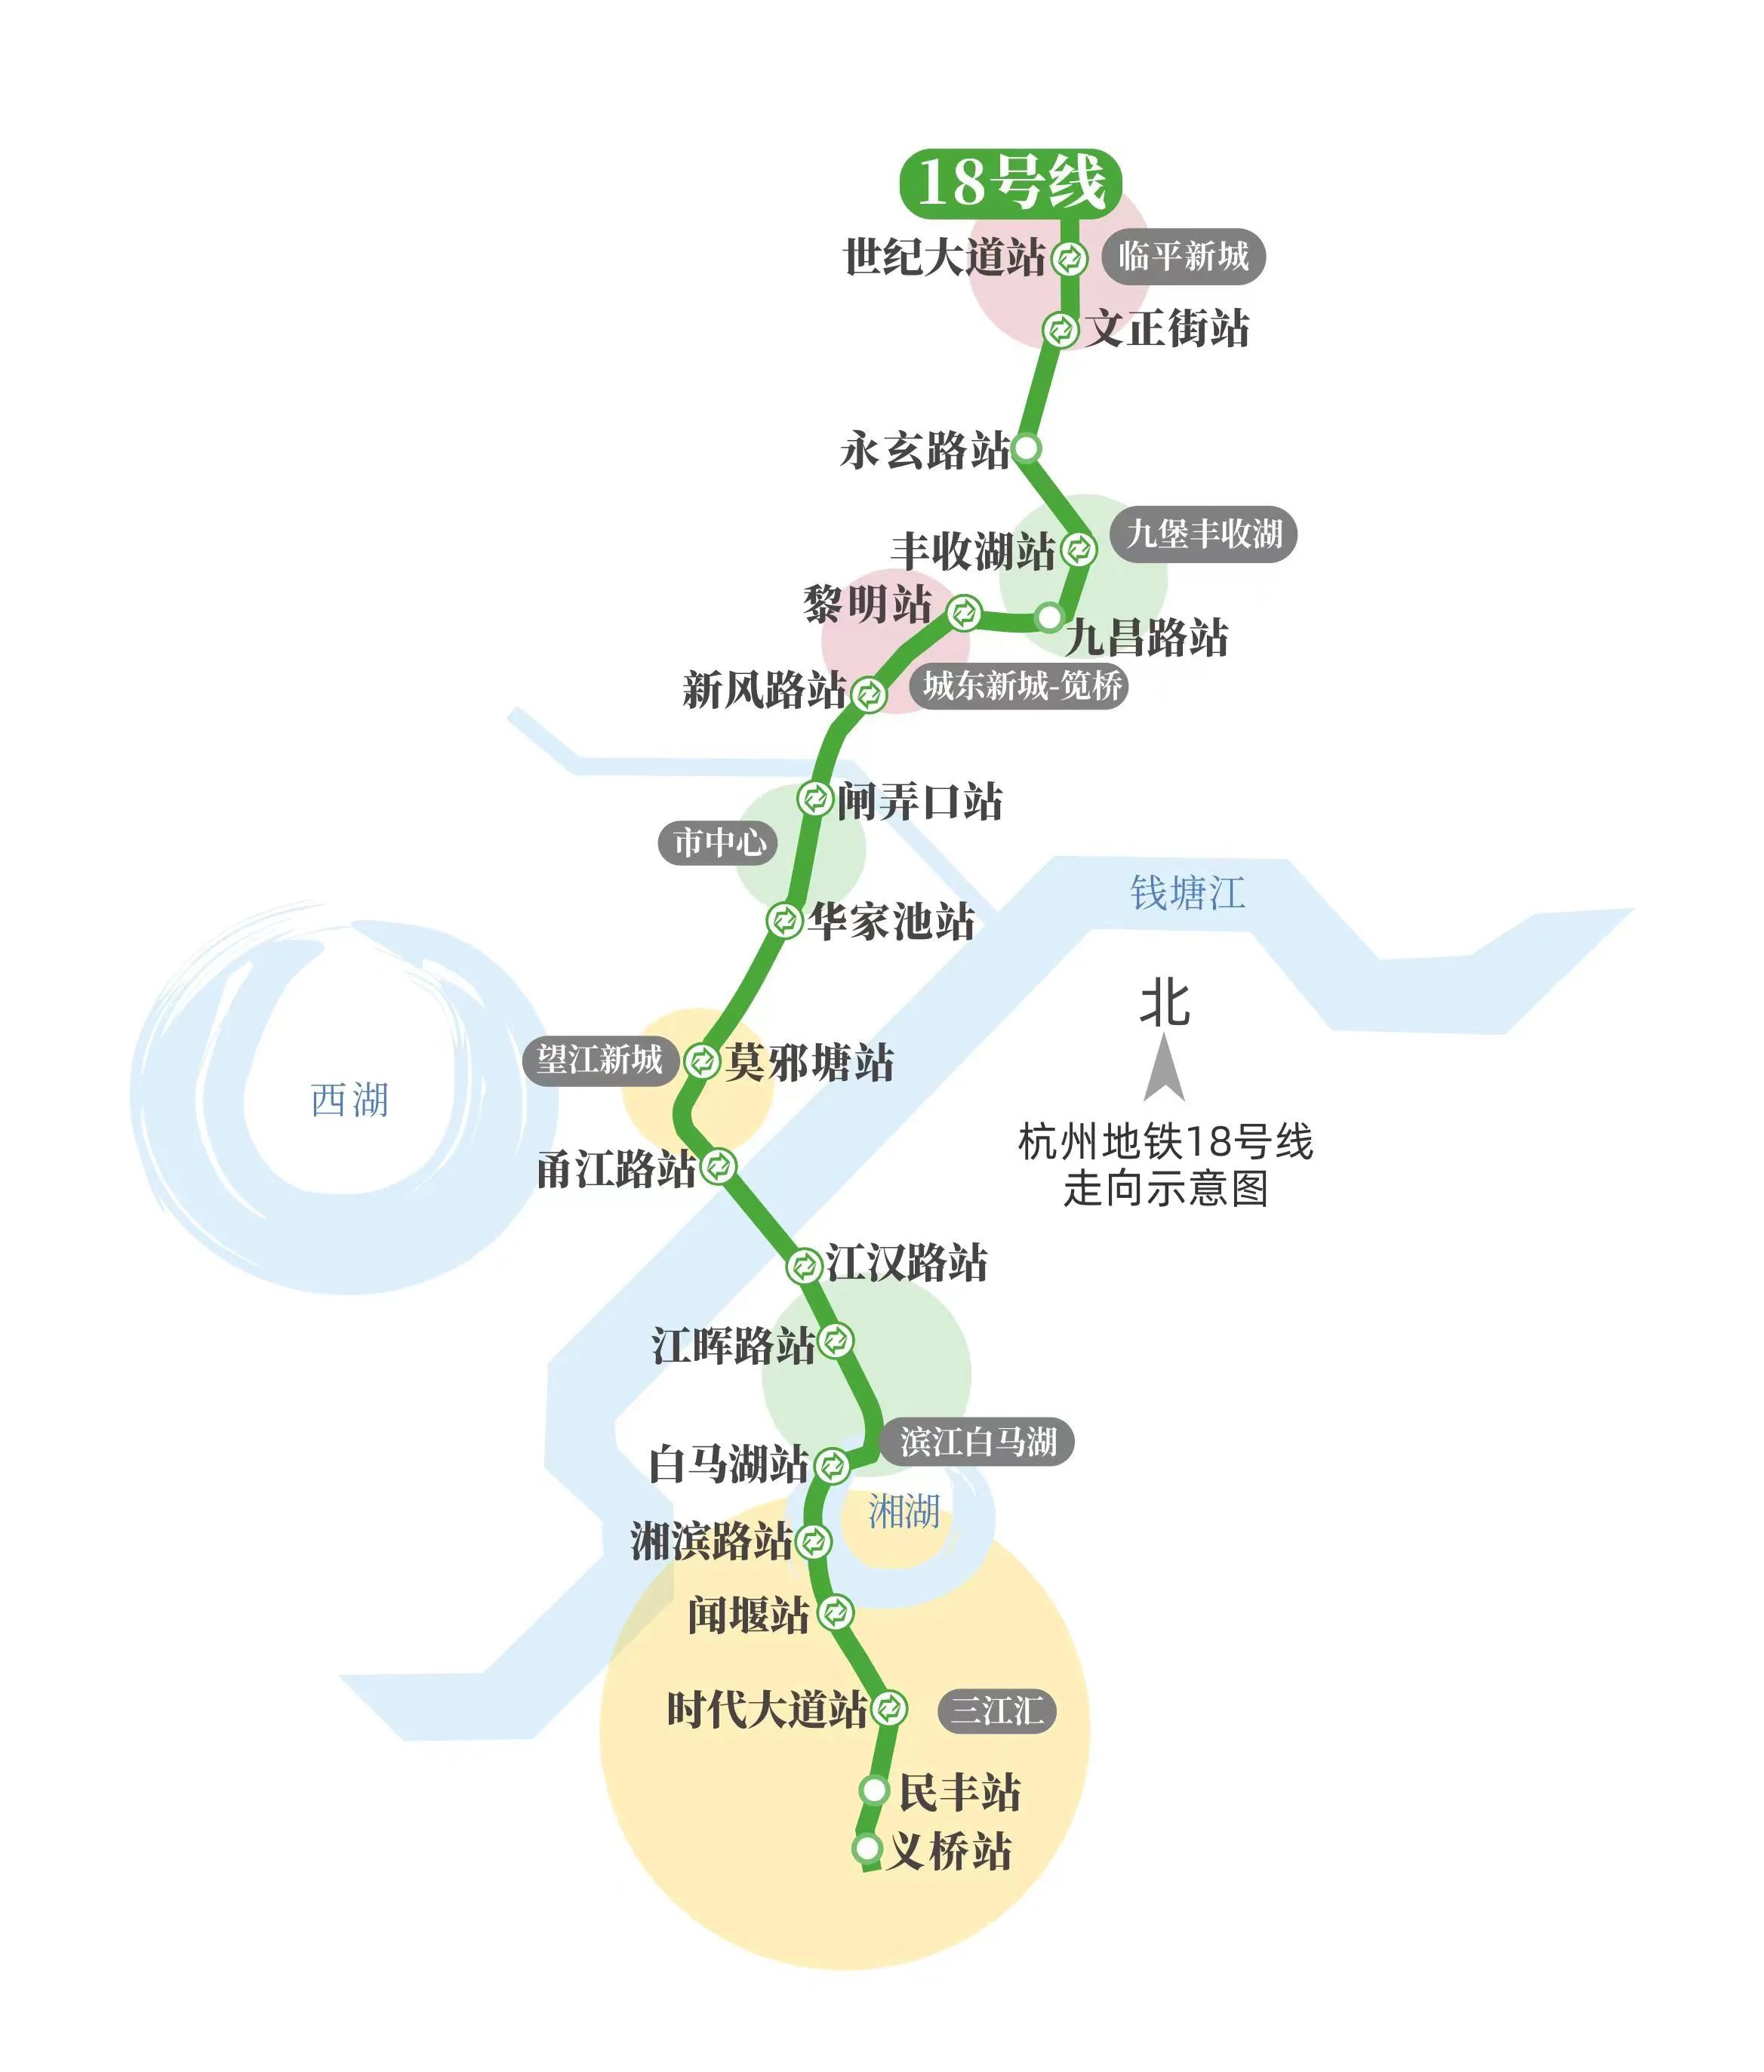 2028年，杭州将迎来南北快线